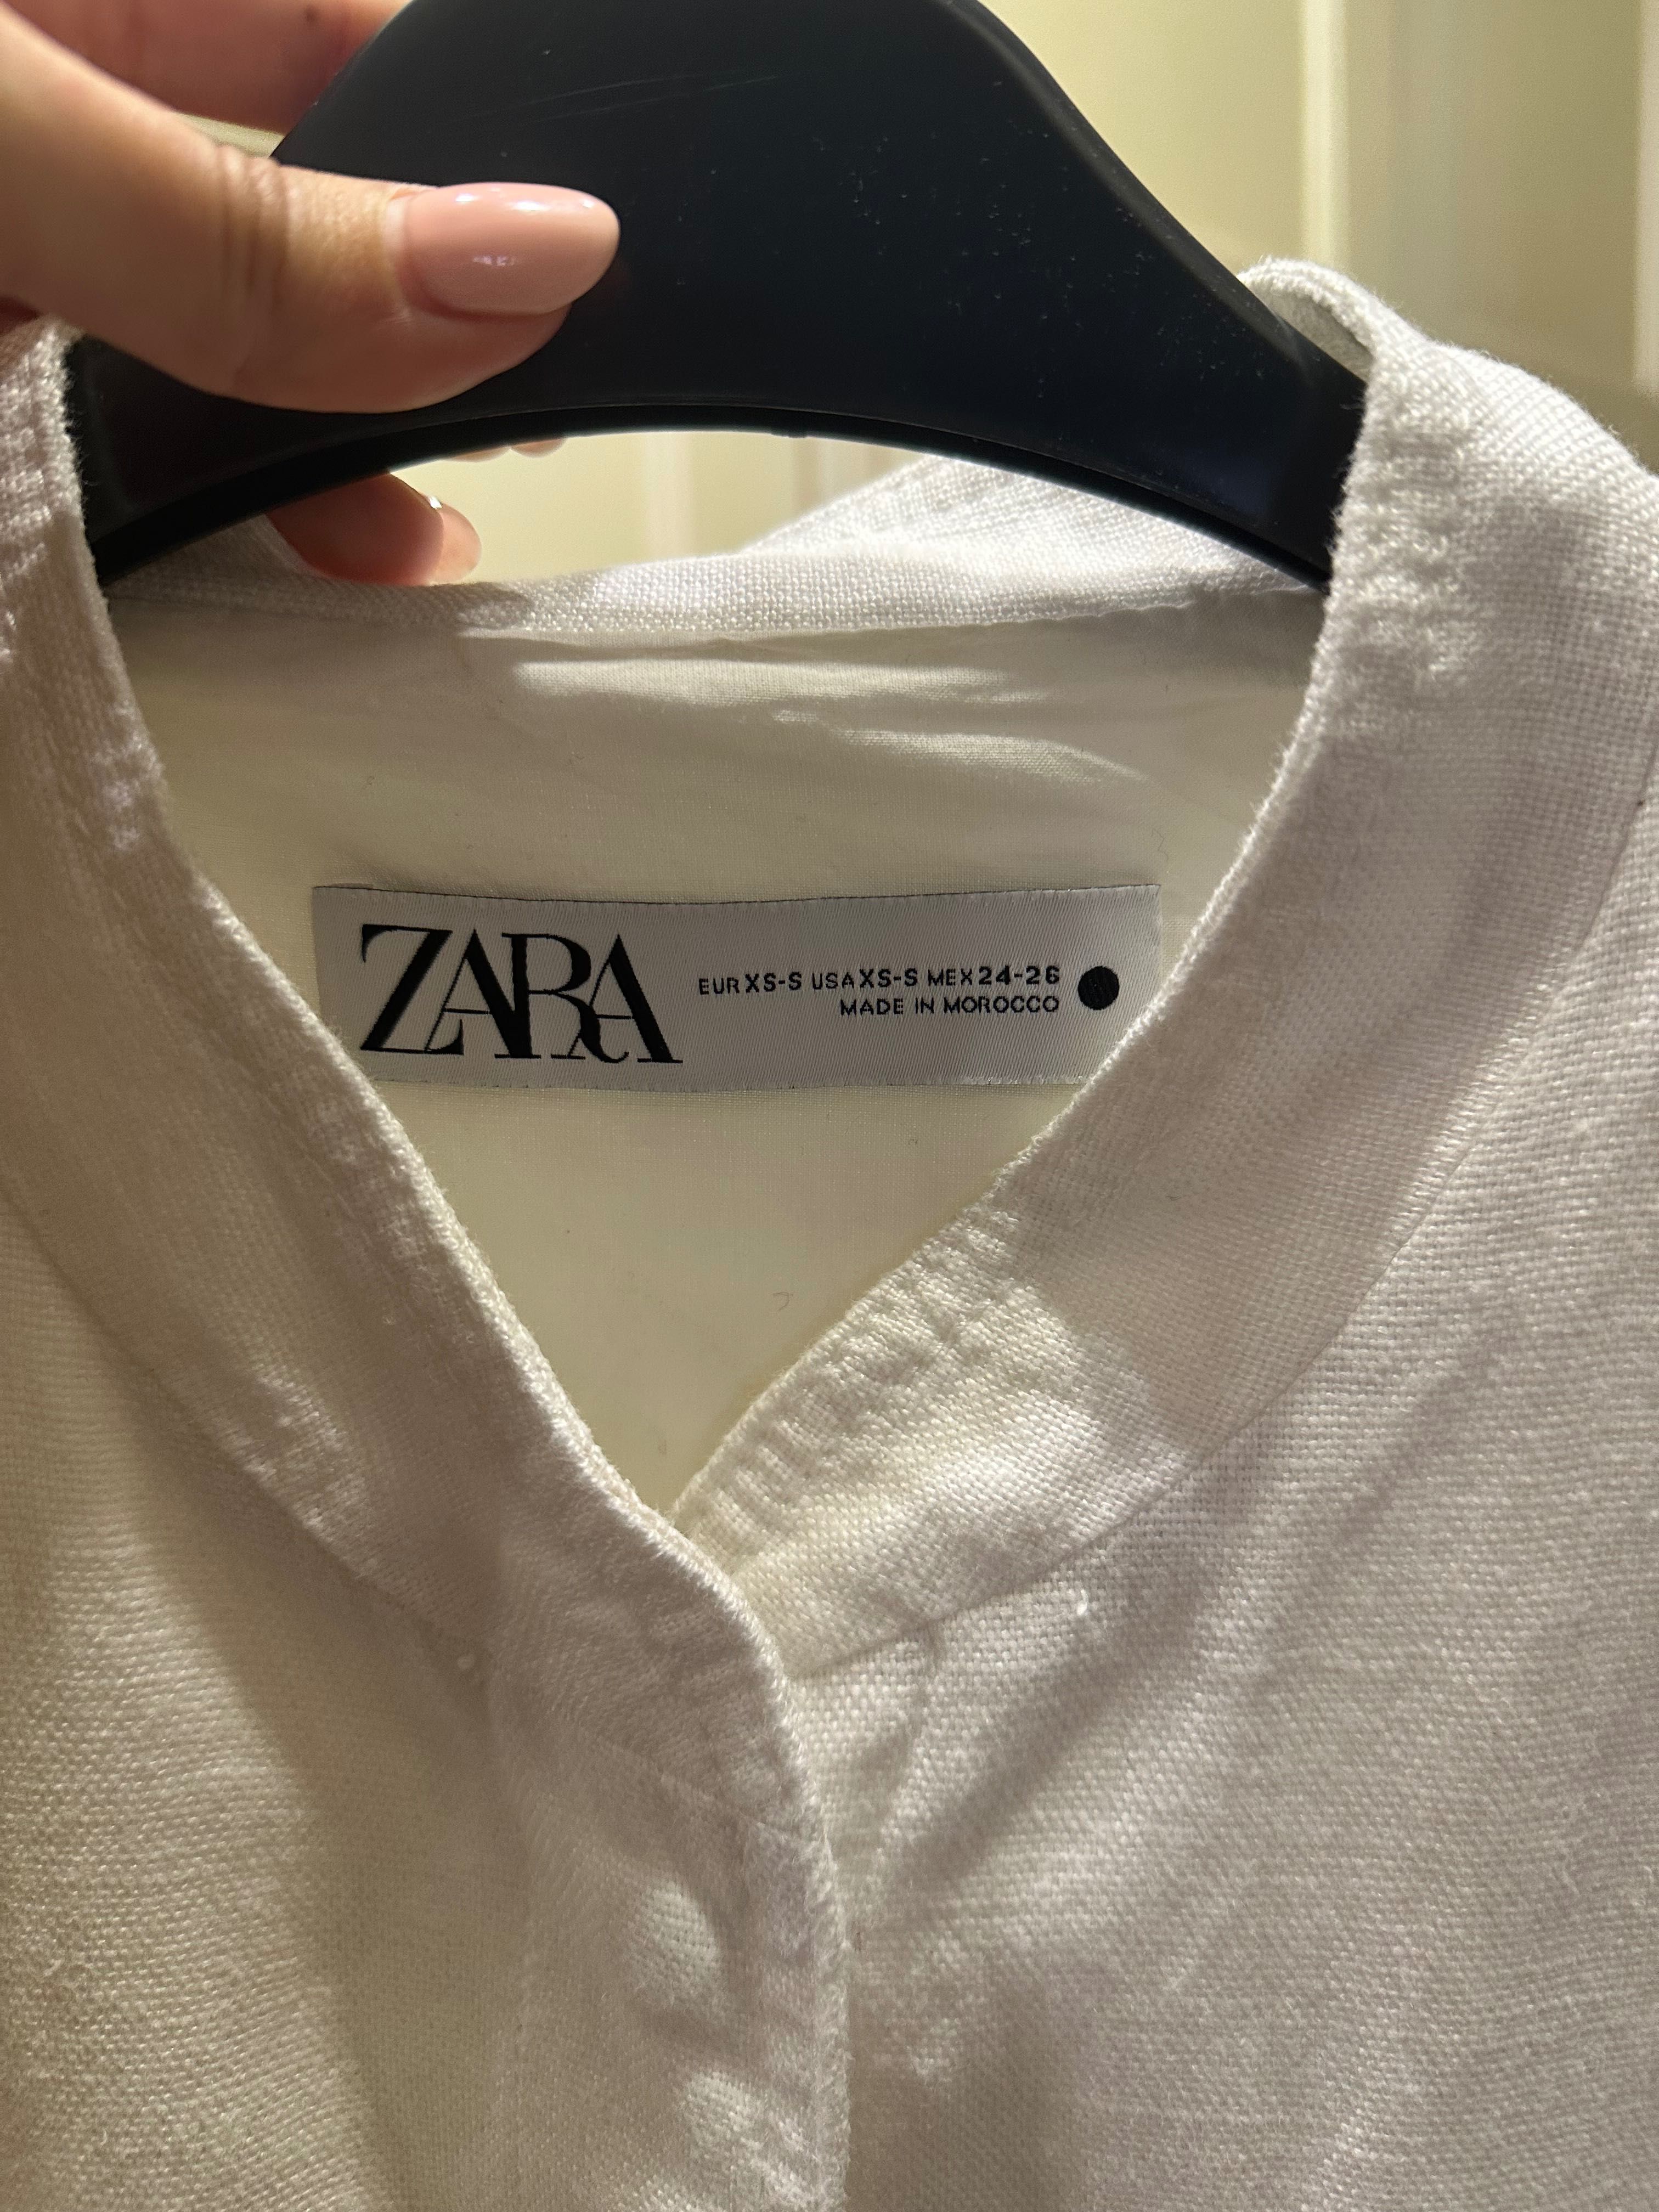 Zara дамска ефектна риза, S